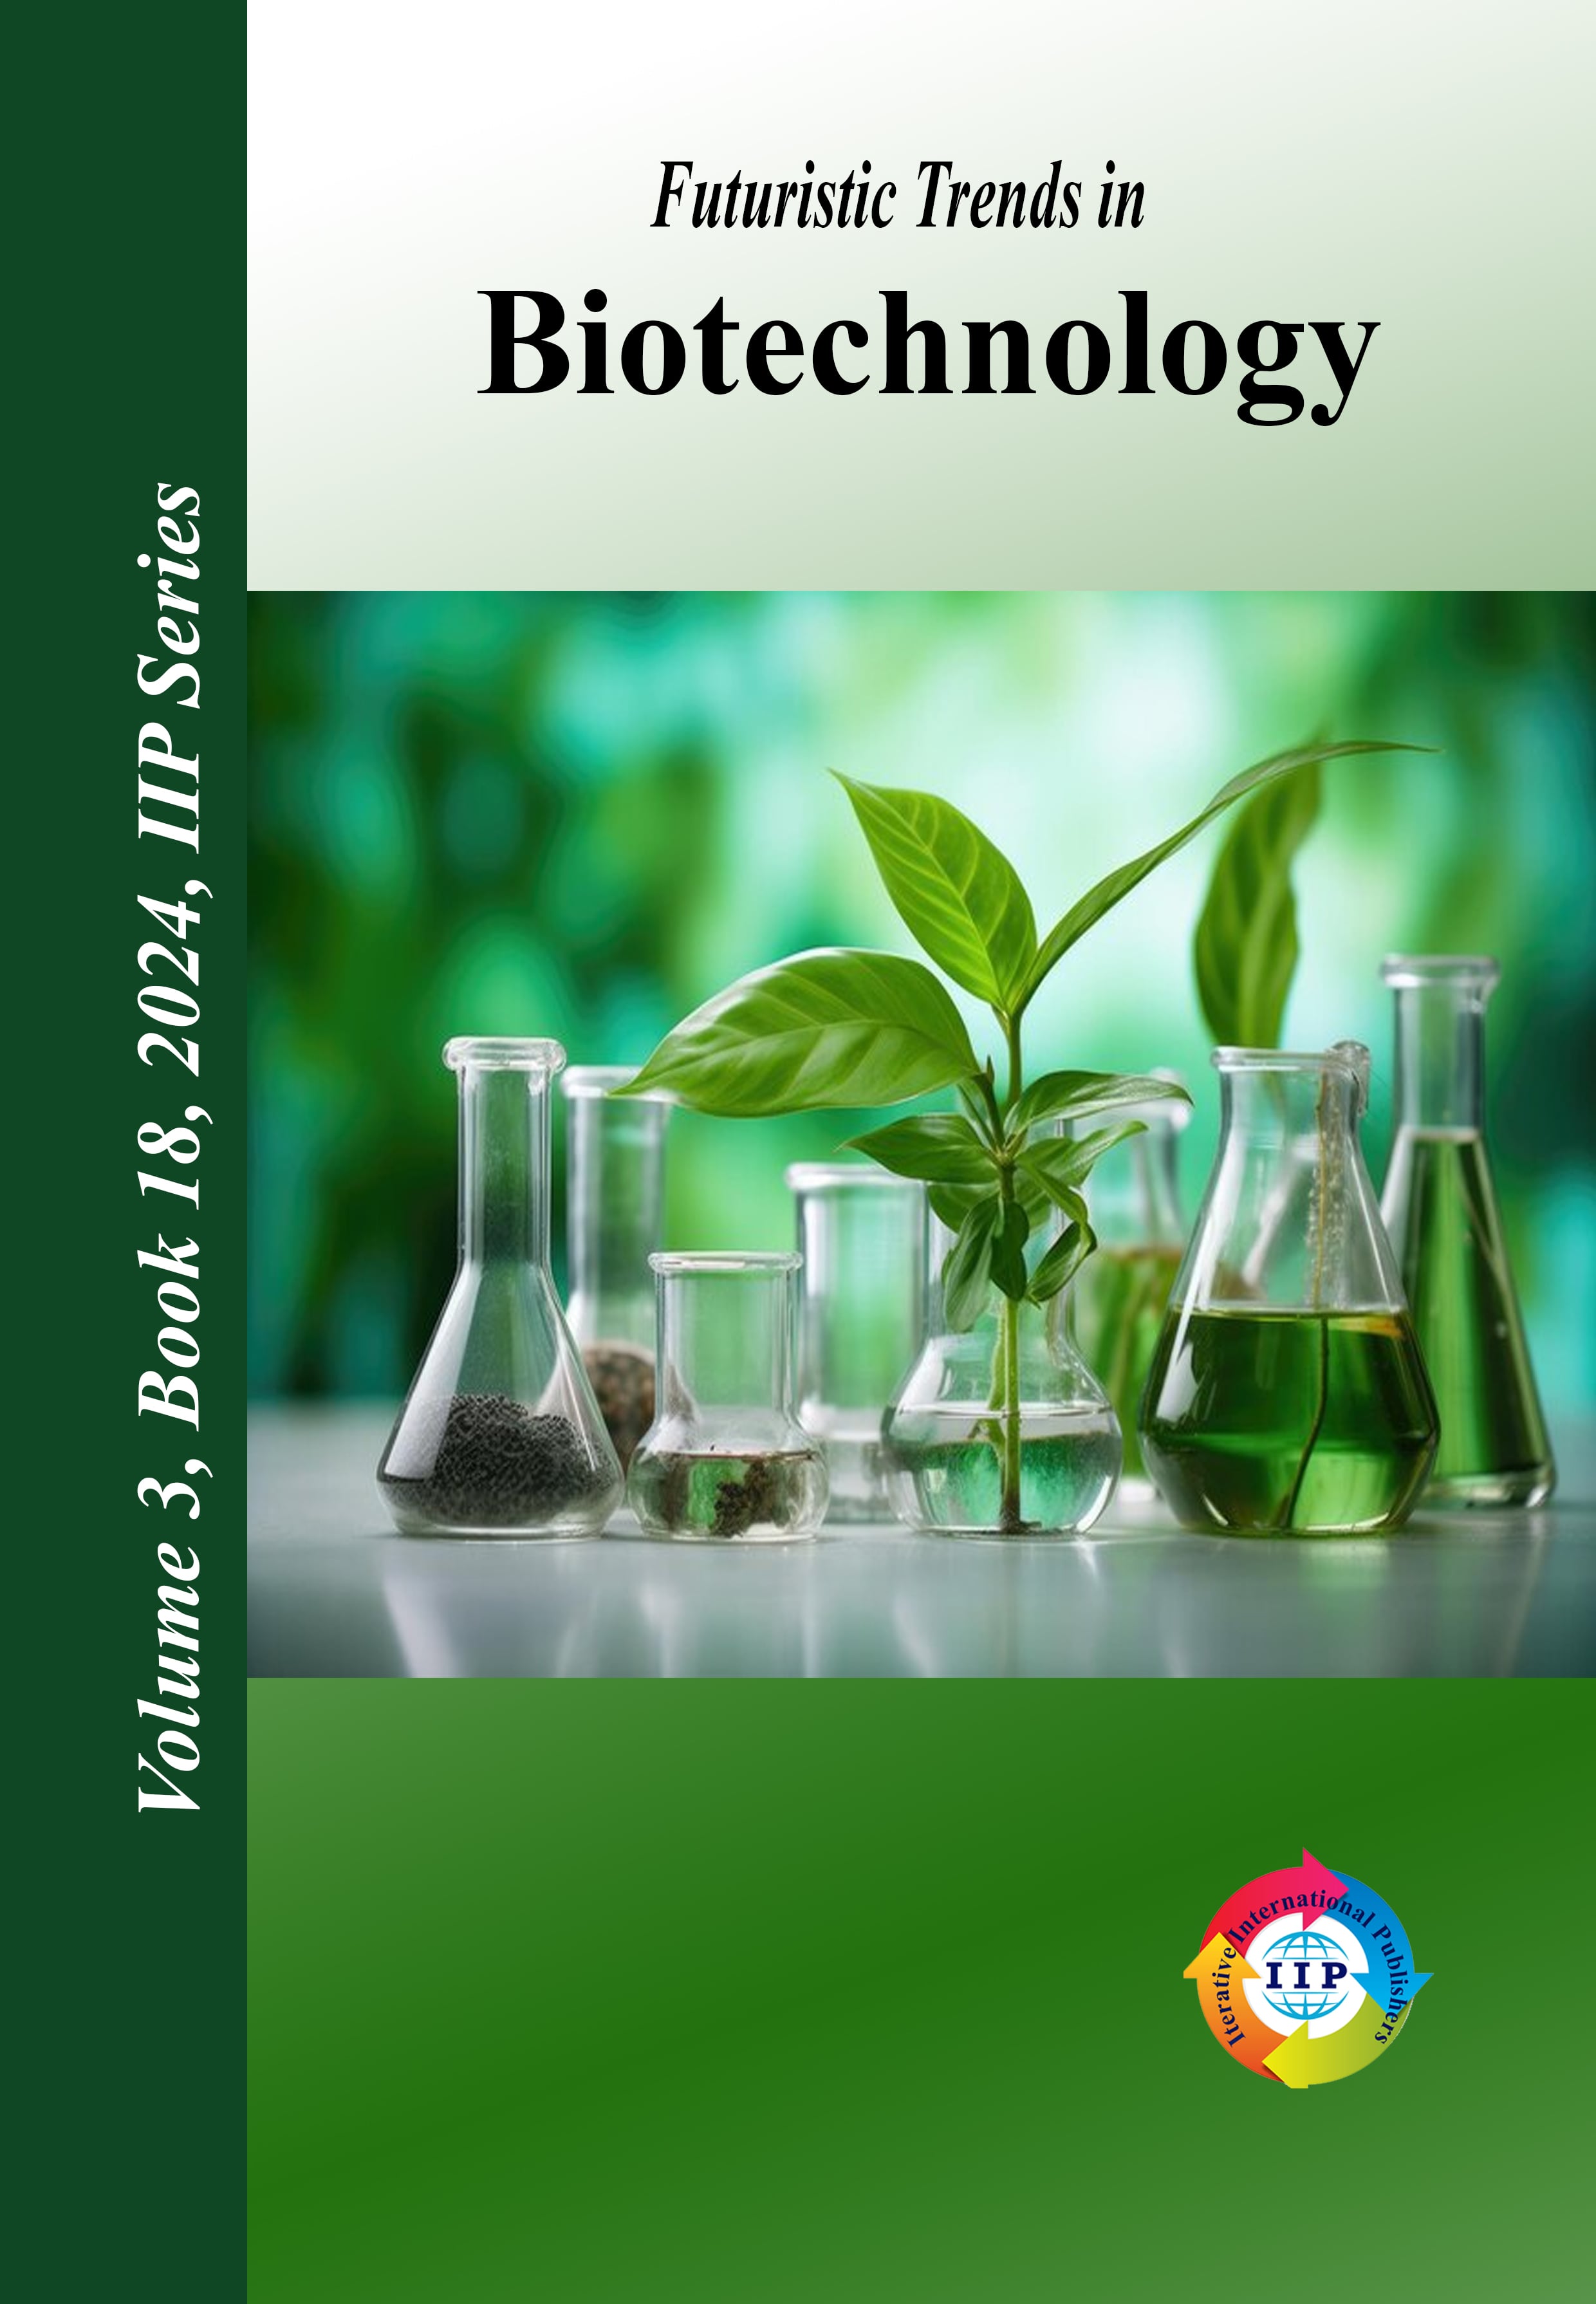 Futuristic Trends in Biotechnology Volume 3 Book 18